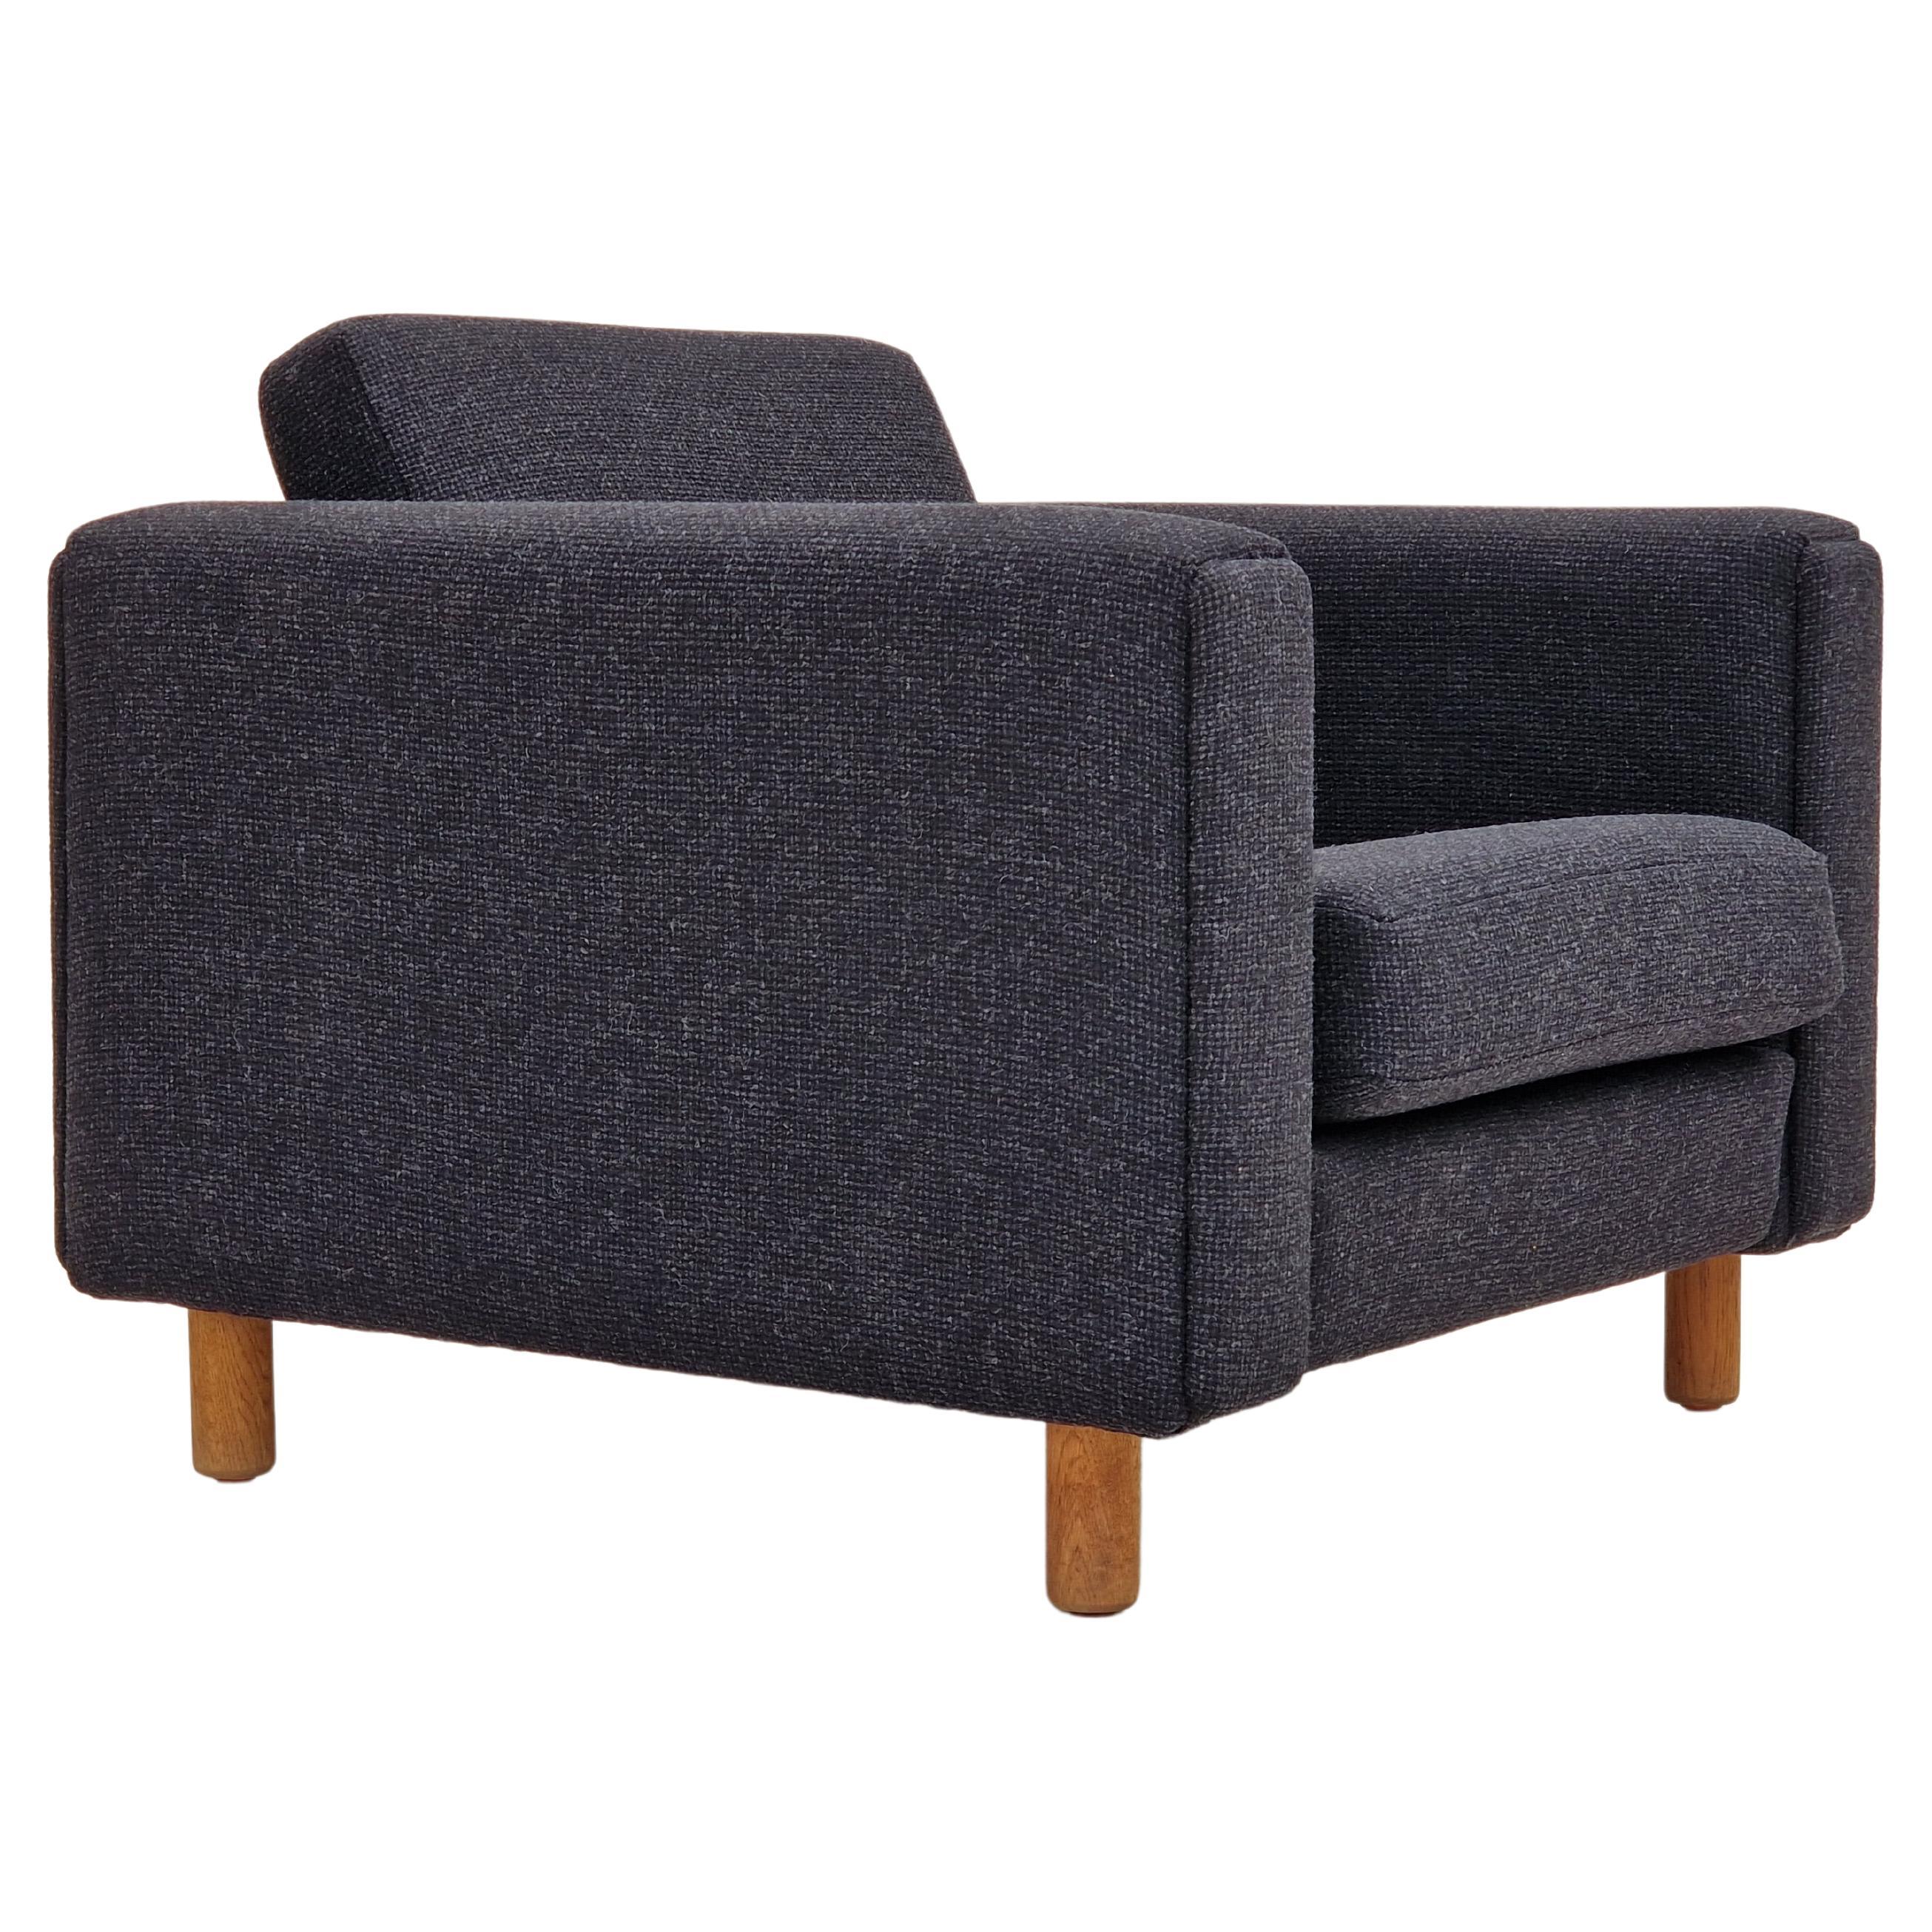 1970s, Danish design by H.J. Wegner, reupholstered armchair, model GE300. For Sale